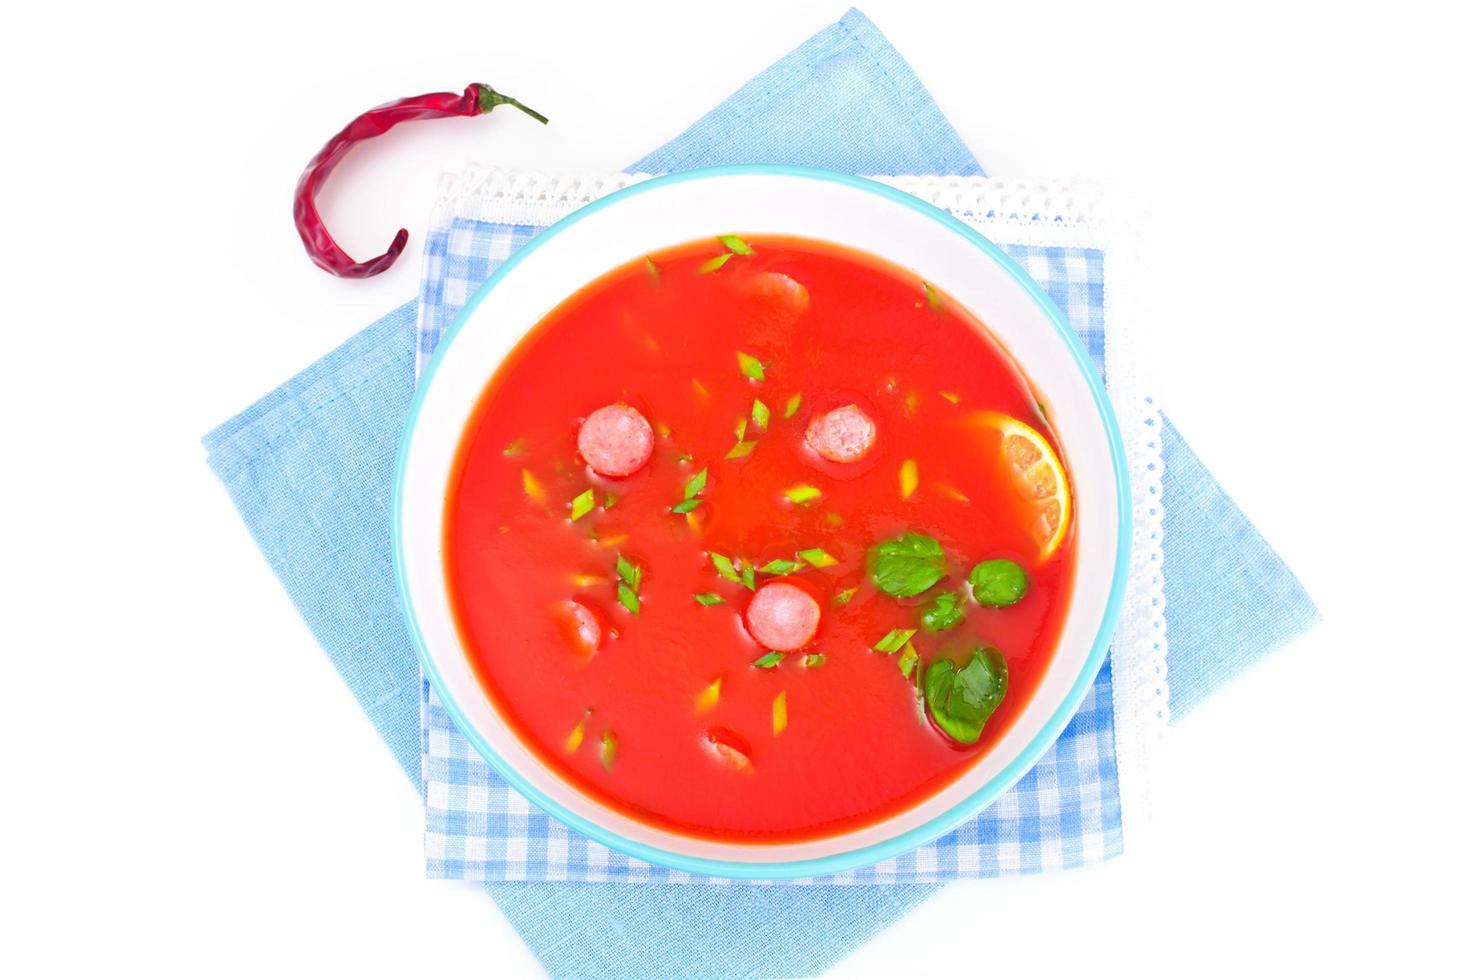 soupe de tomate dans l'assiette. cuisine italienne nationale photo